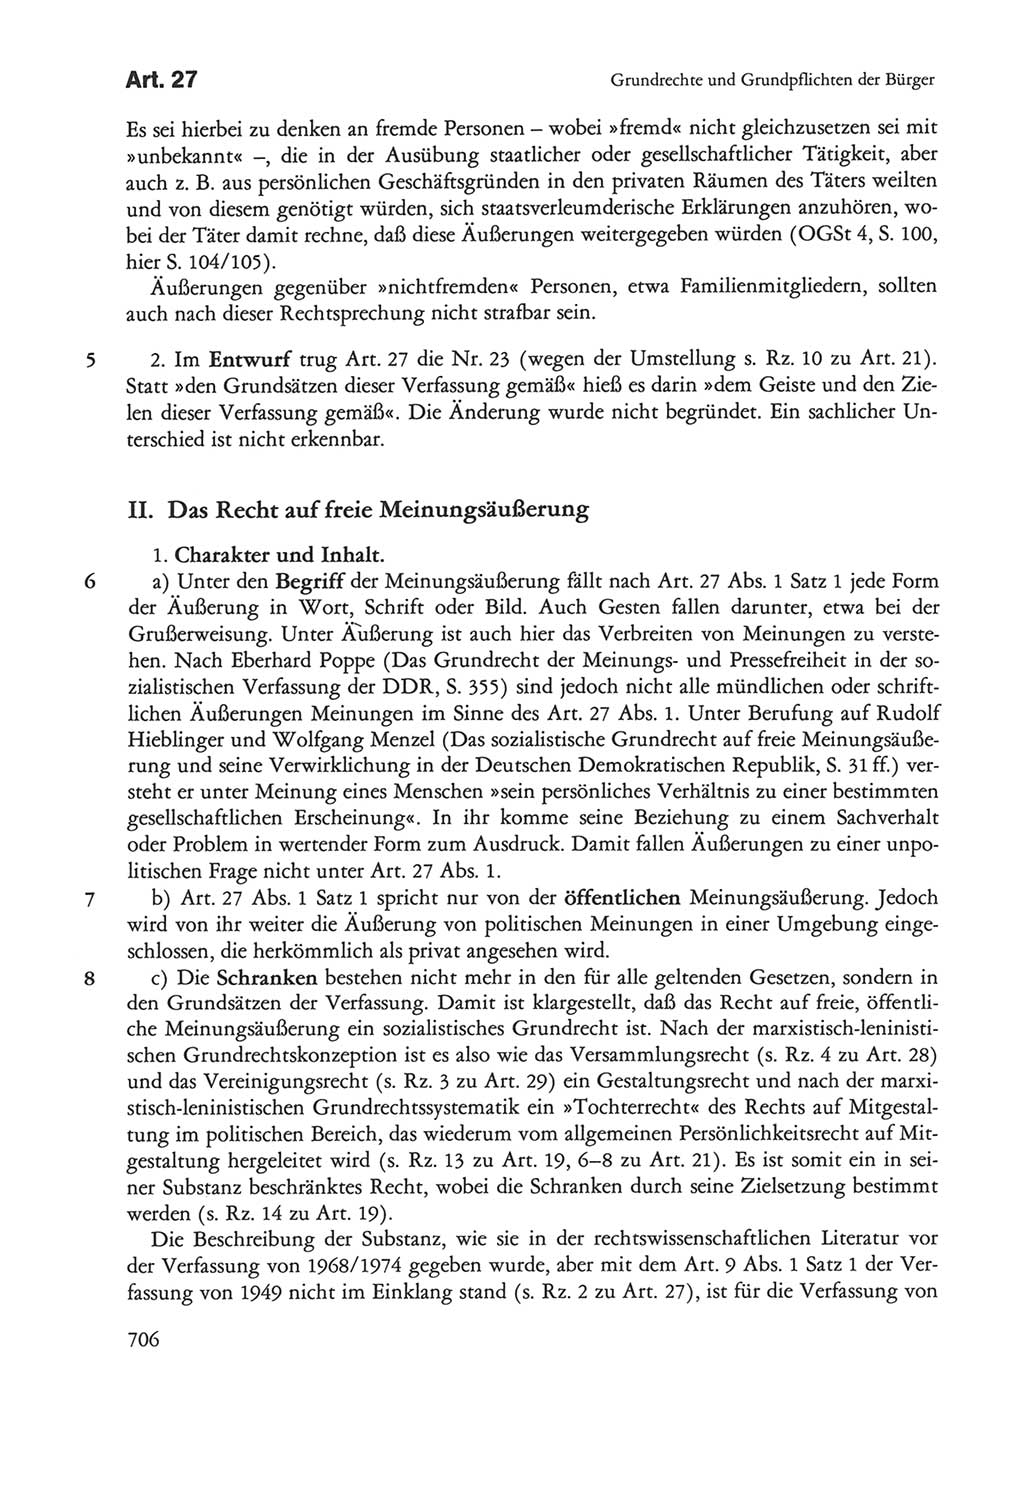 Die sozialistische Verfassung der Deutschen Demokratischen Republik (DDR), Kommentar 1982, Seite 706 (Soz. Verf. DDR Komm. 1982, S. 706)